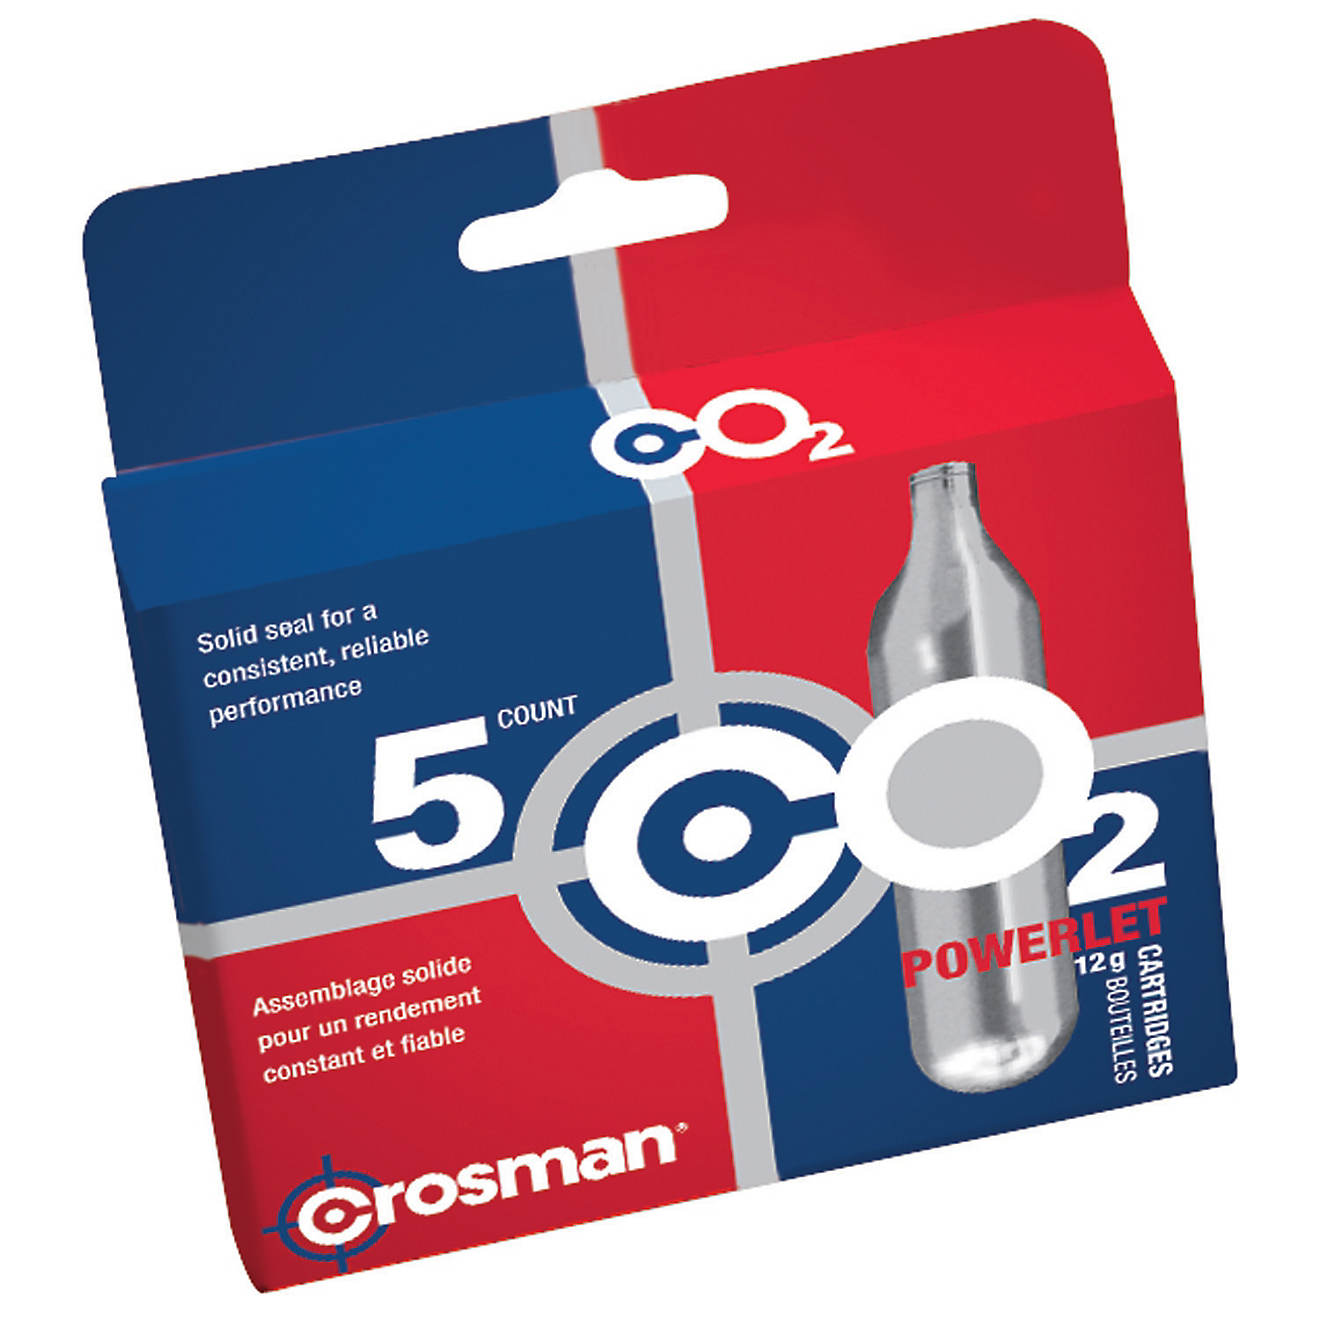 Crosman Copperhead Powerlet 12-Gram CO2 Cartridges 5-Pack                                                                        - view number 1